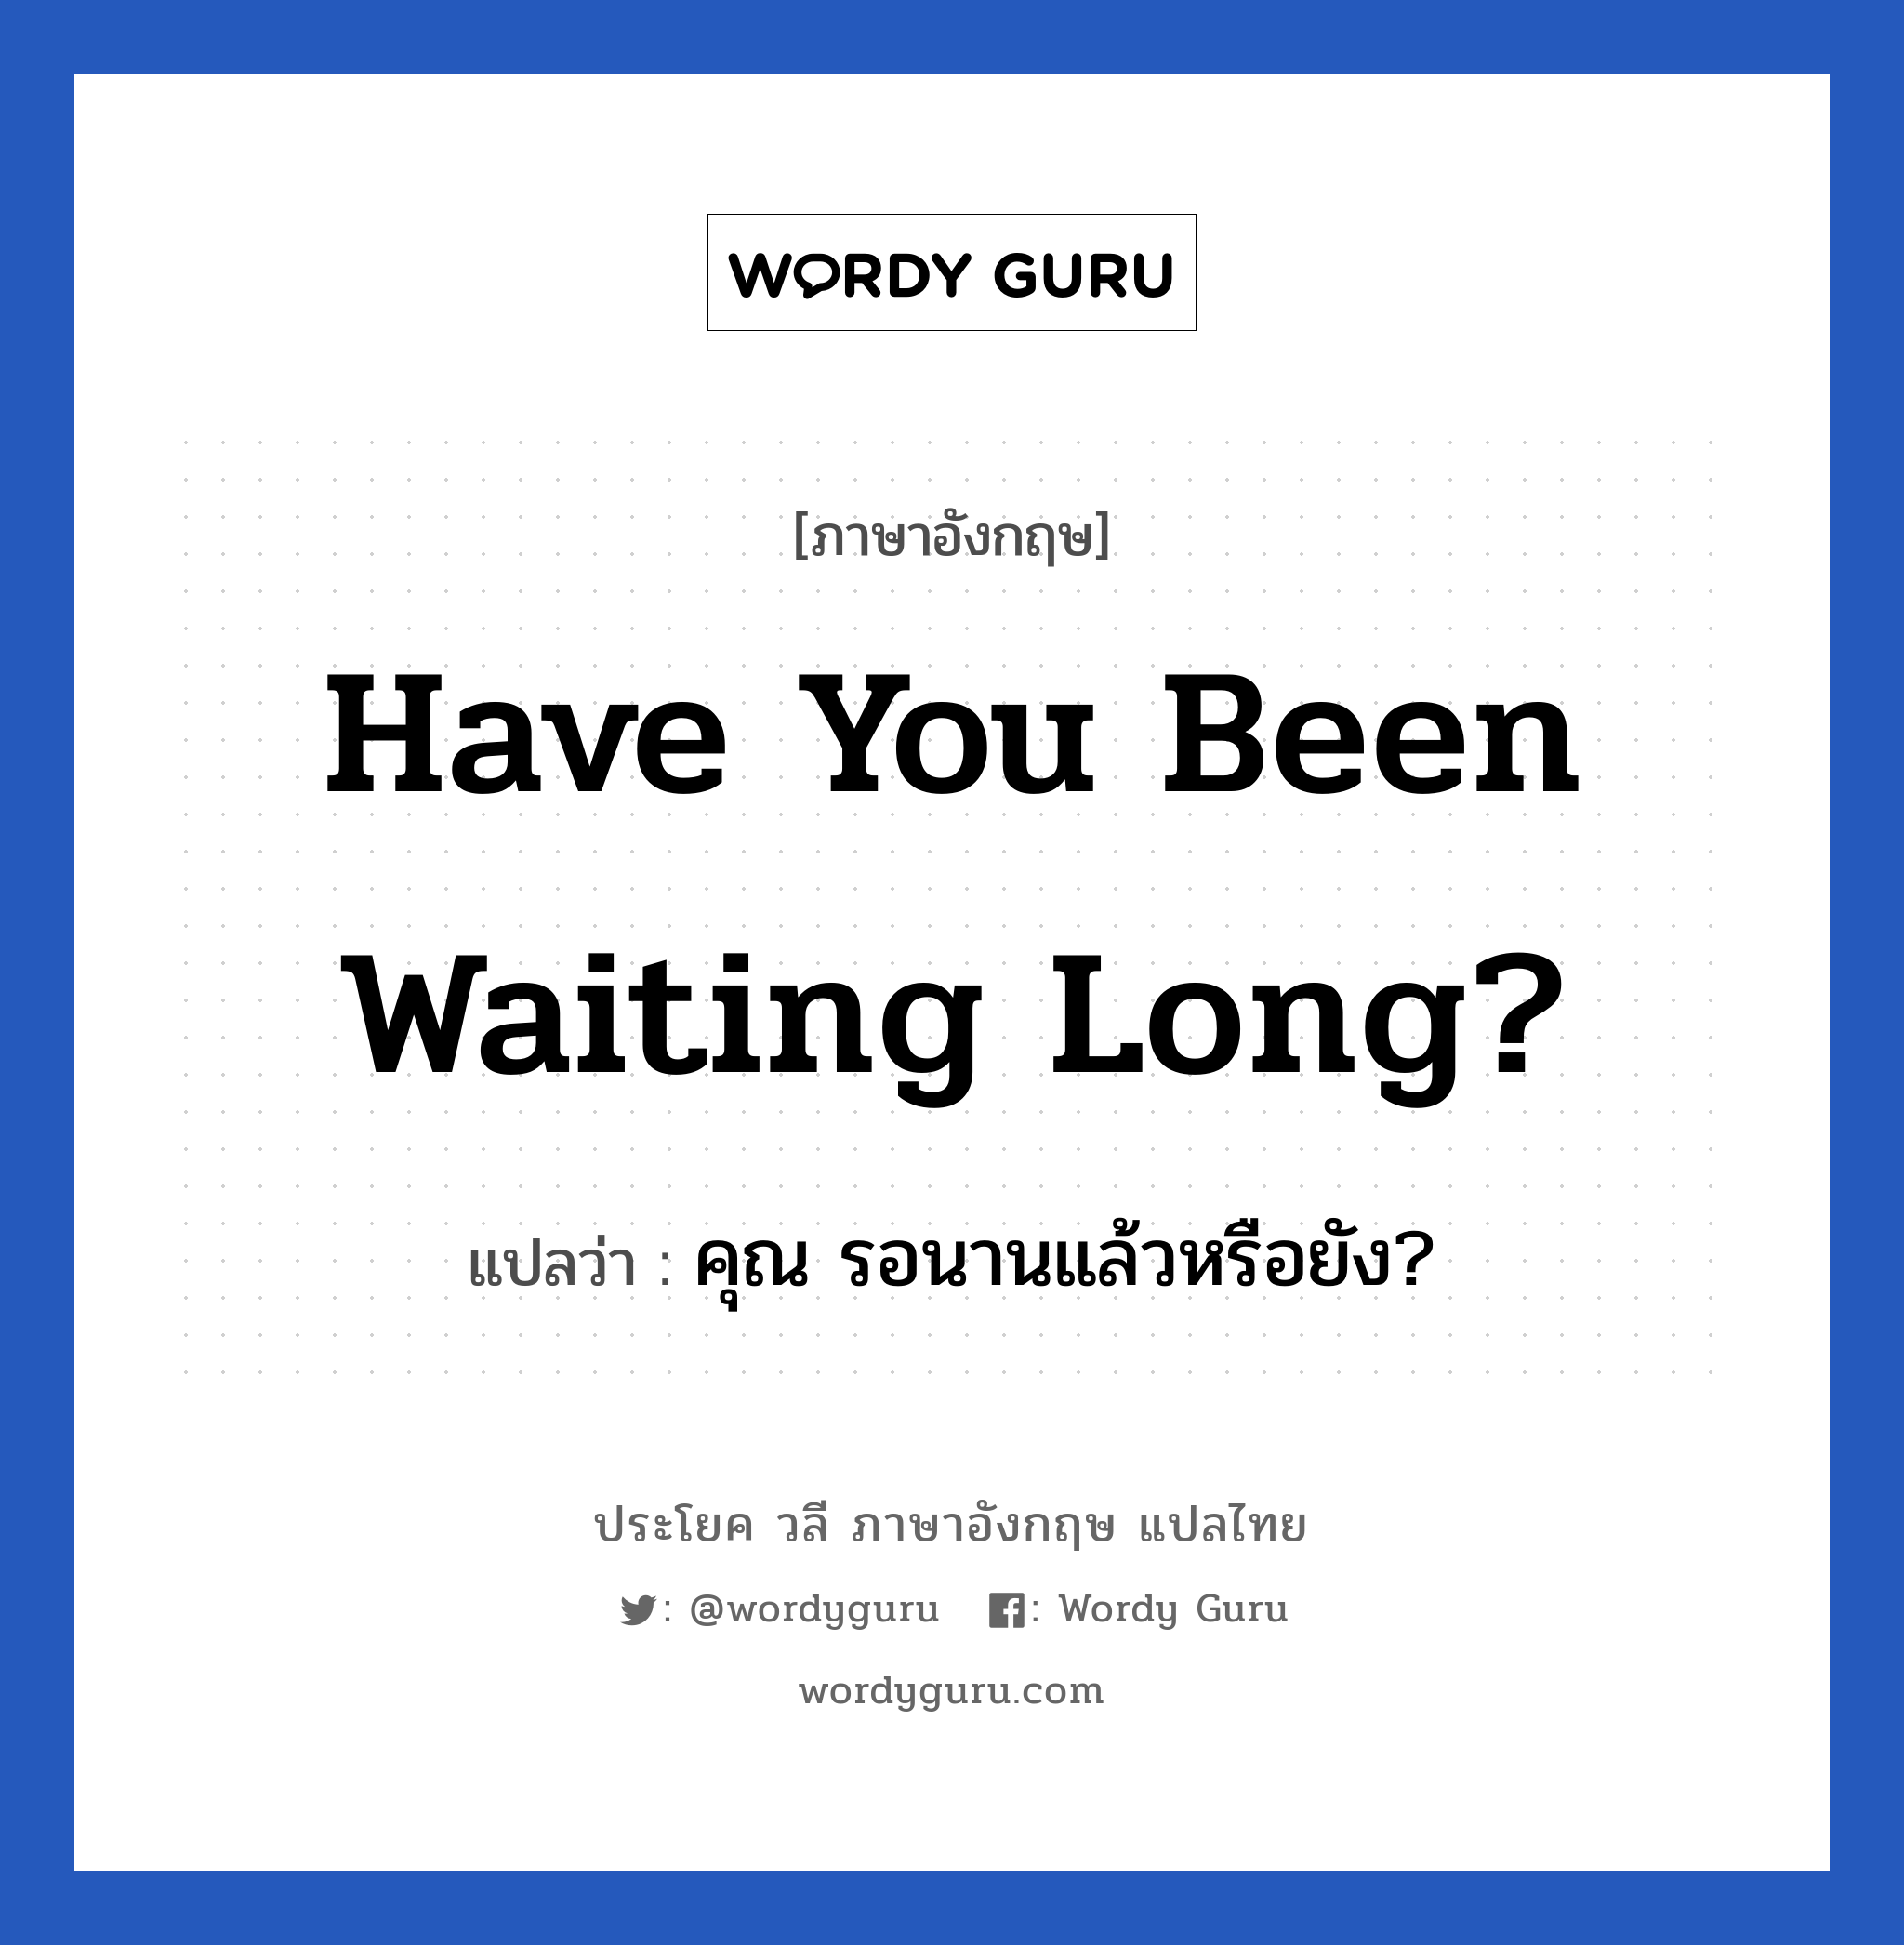 คุณ รอนานแล้วหรือยัง? ภาษาอังกฤษ?, วลีภาษาอังกฤษ คุณ รอนานแล้วหรือยัง? แปลว่า Have you been waiting long?